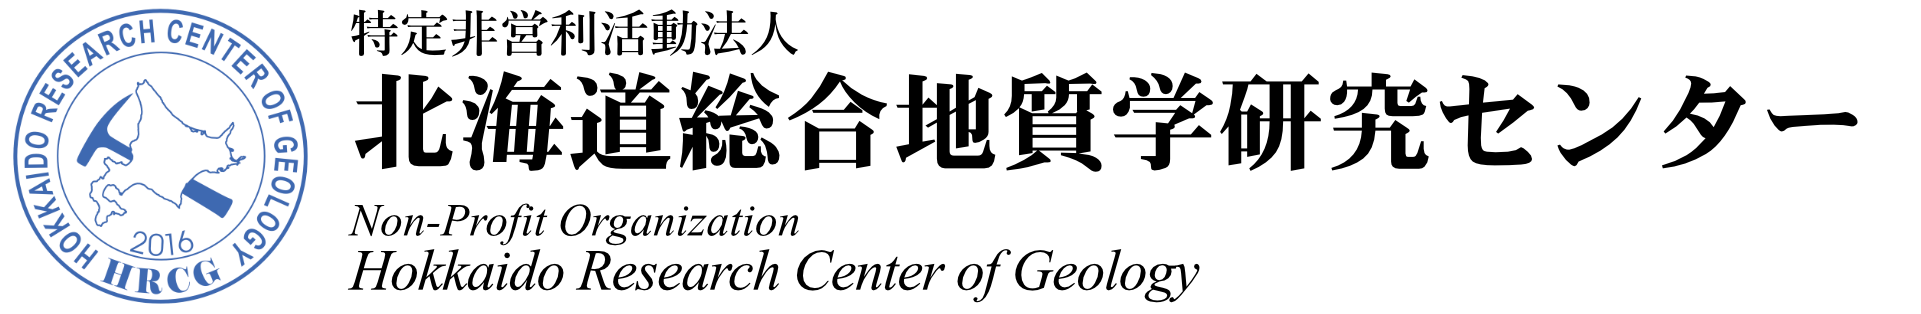 logo of HRCG